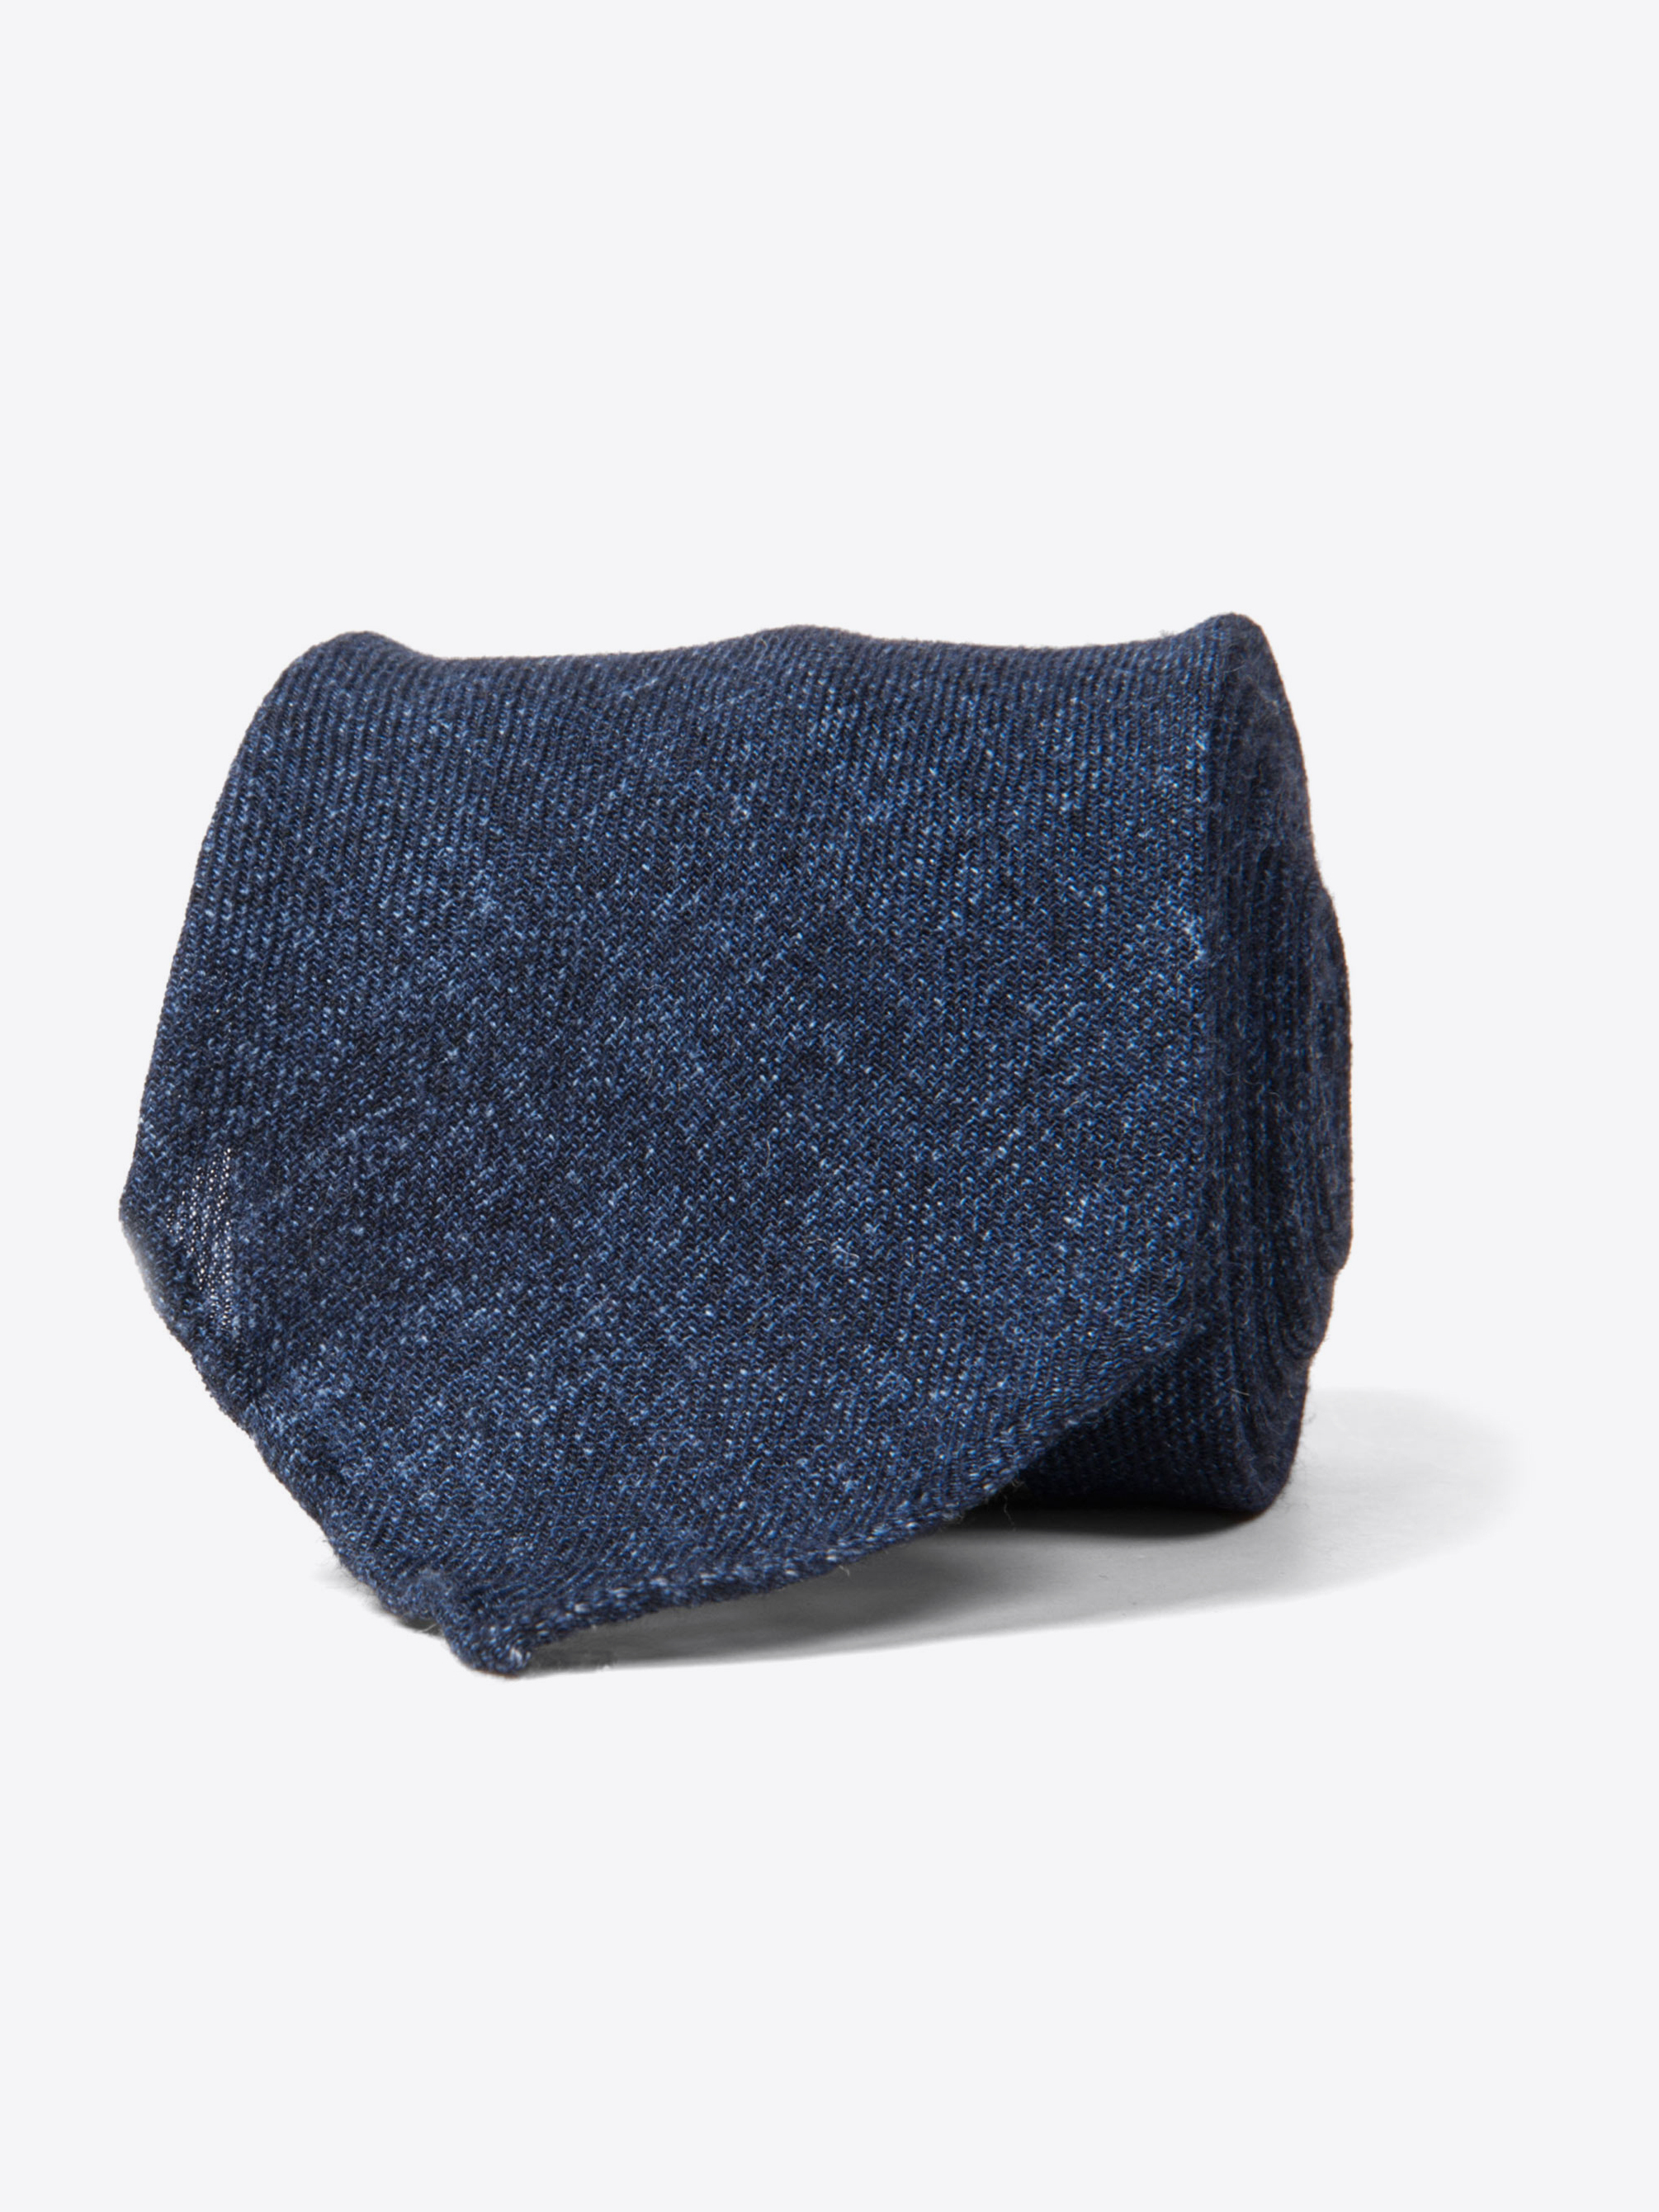 Zoom Image of Biella Navy Melange Wool Tie